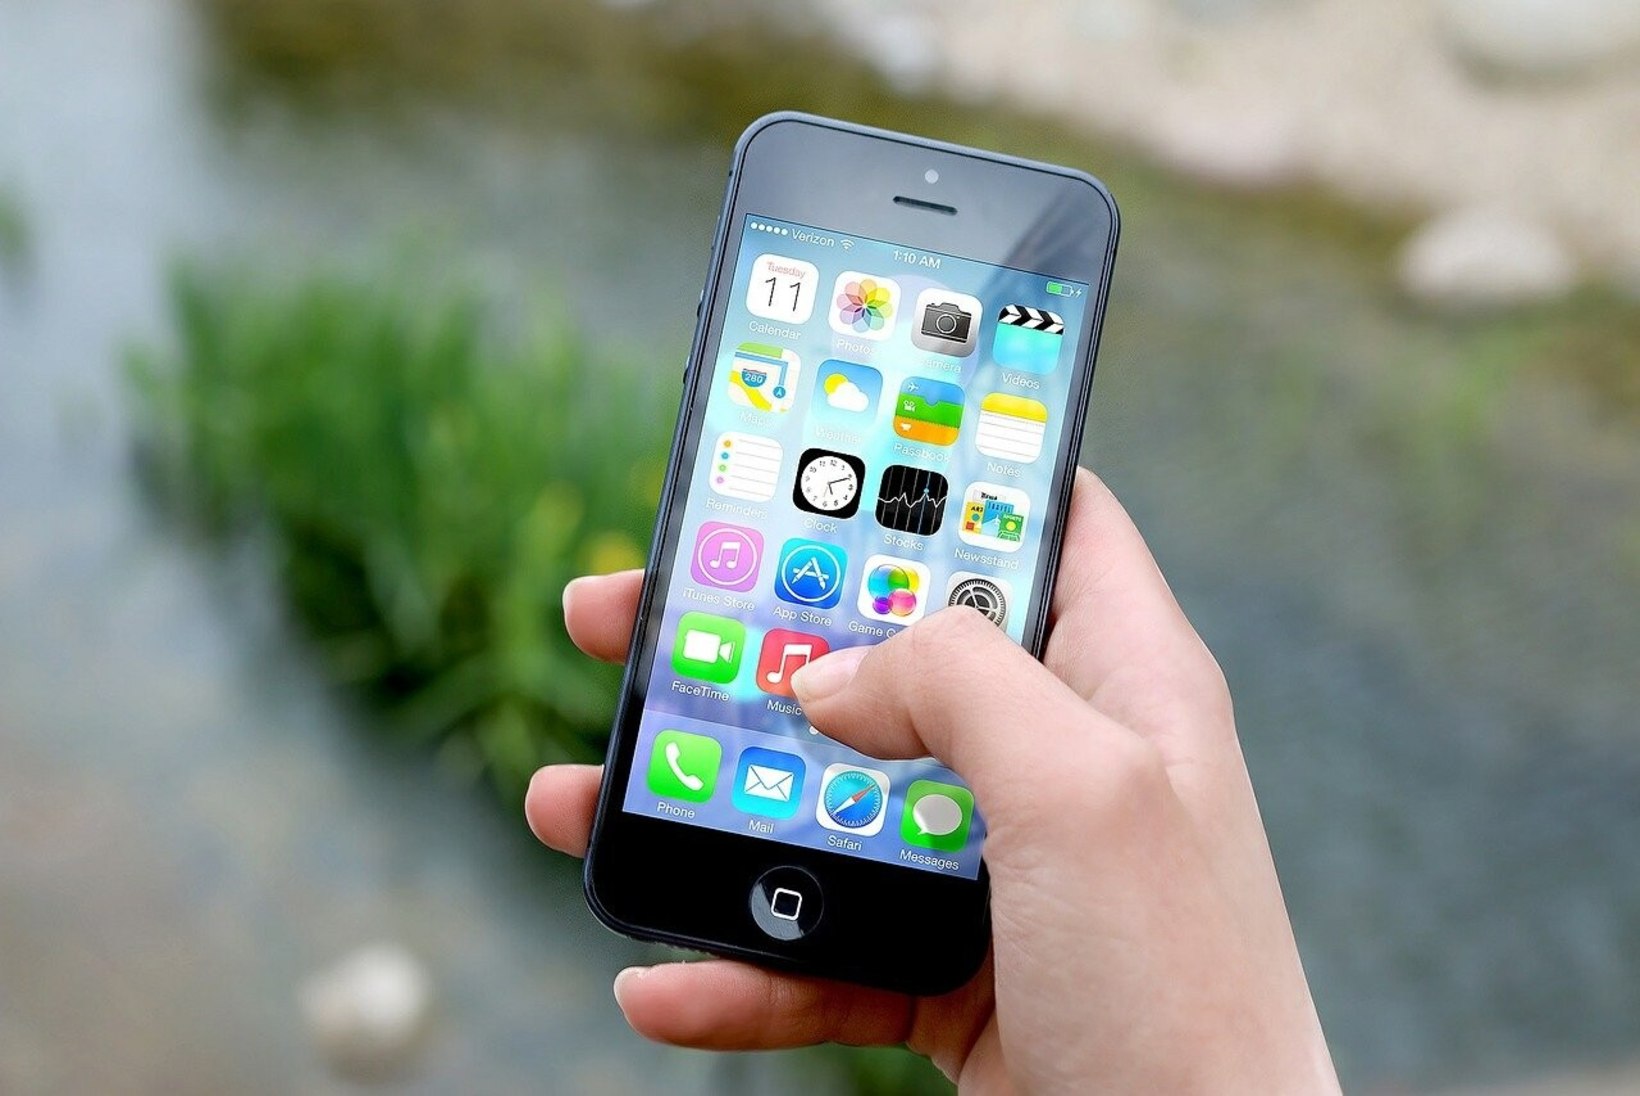 KELLE PILT ON SU TELEFONIS? Apple hakkab uue tarkvara abil pedofiile püüdma